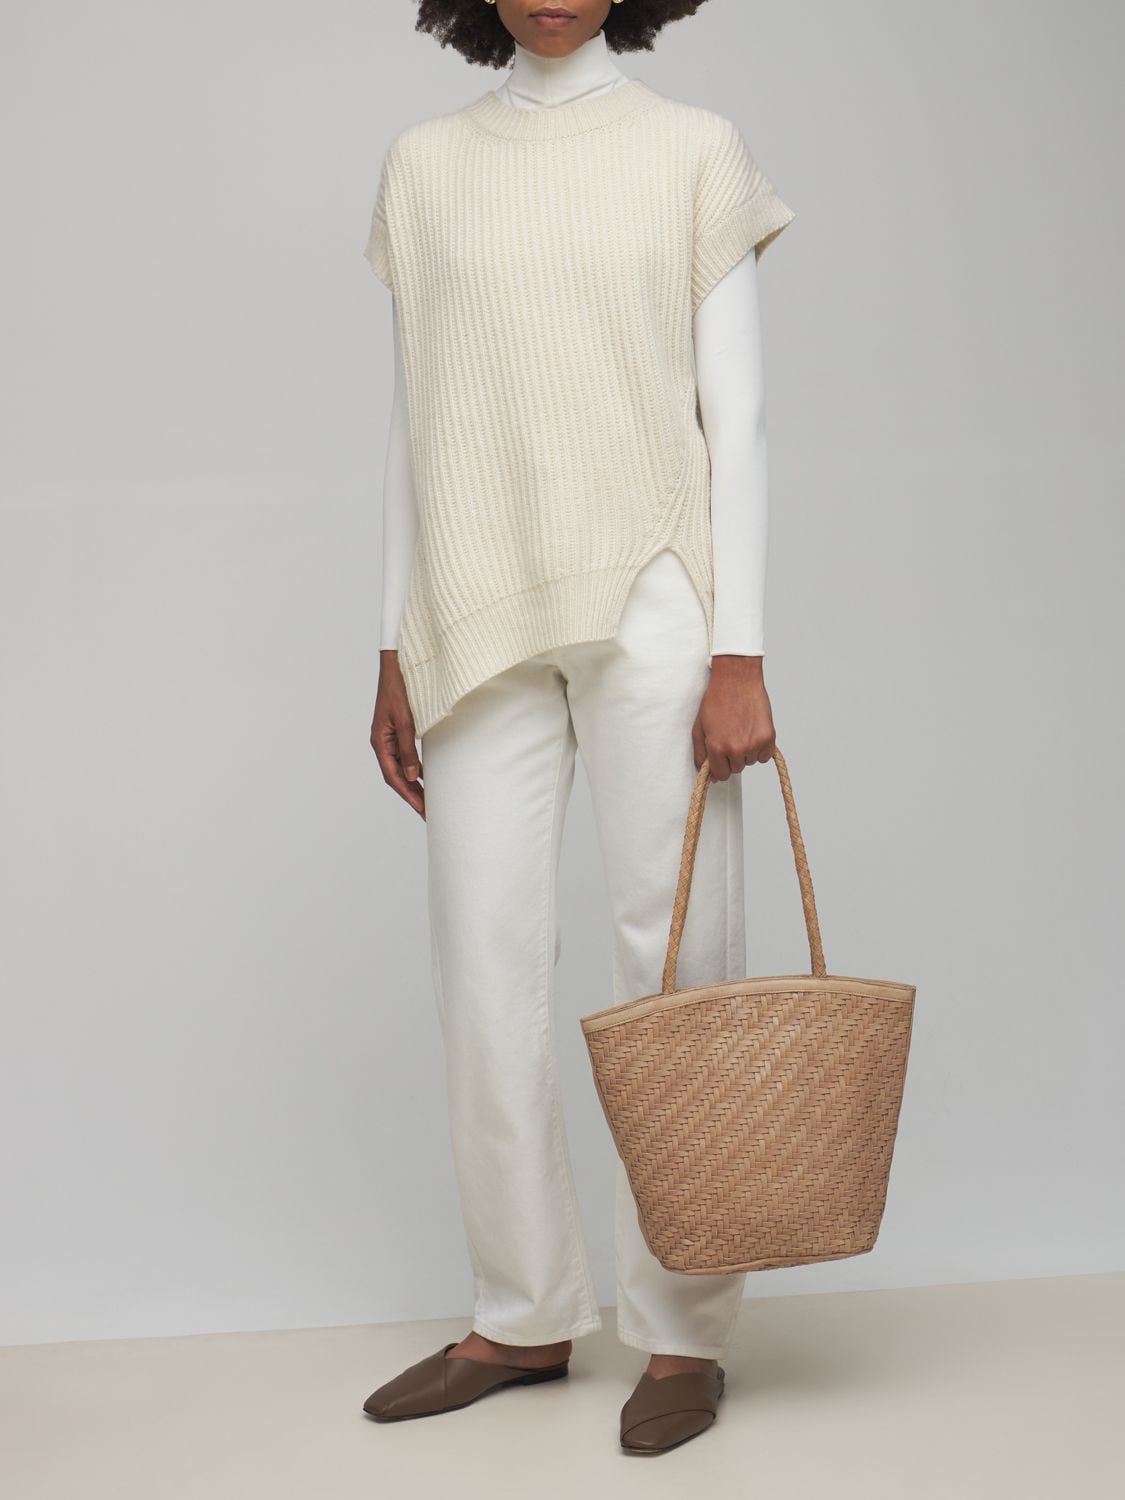 Shop Bembien Jeanne Handwoven Leather Shoulder Bag In Caramel